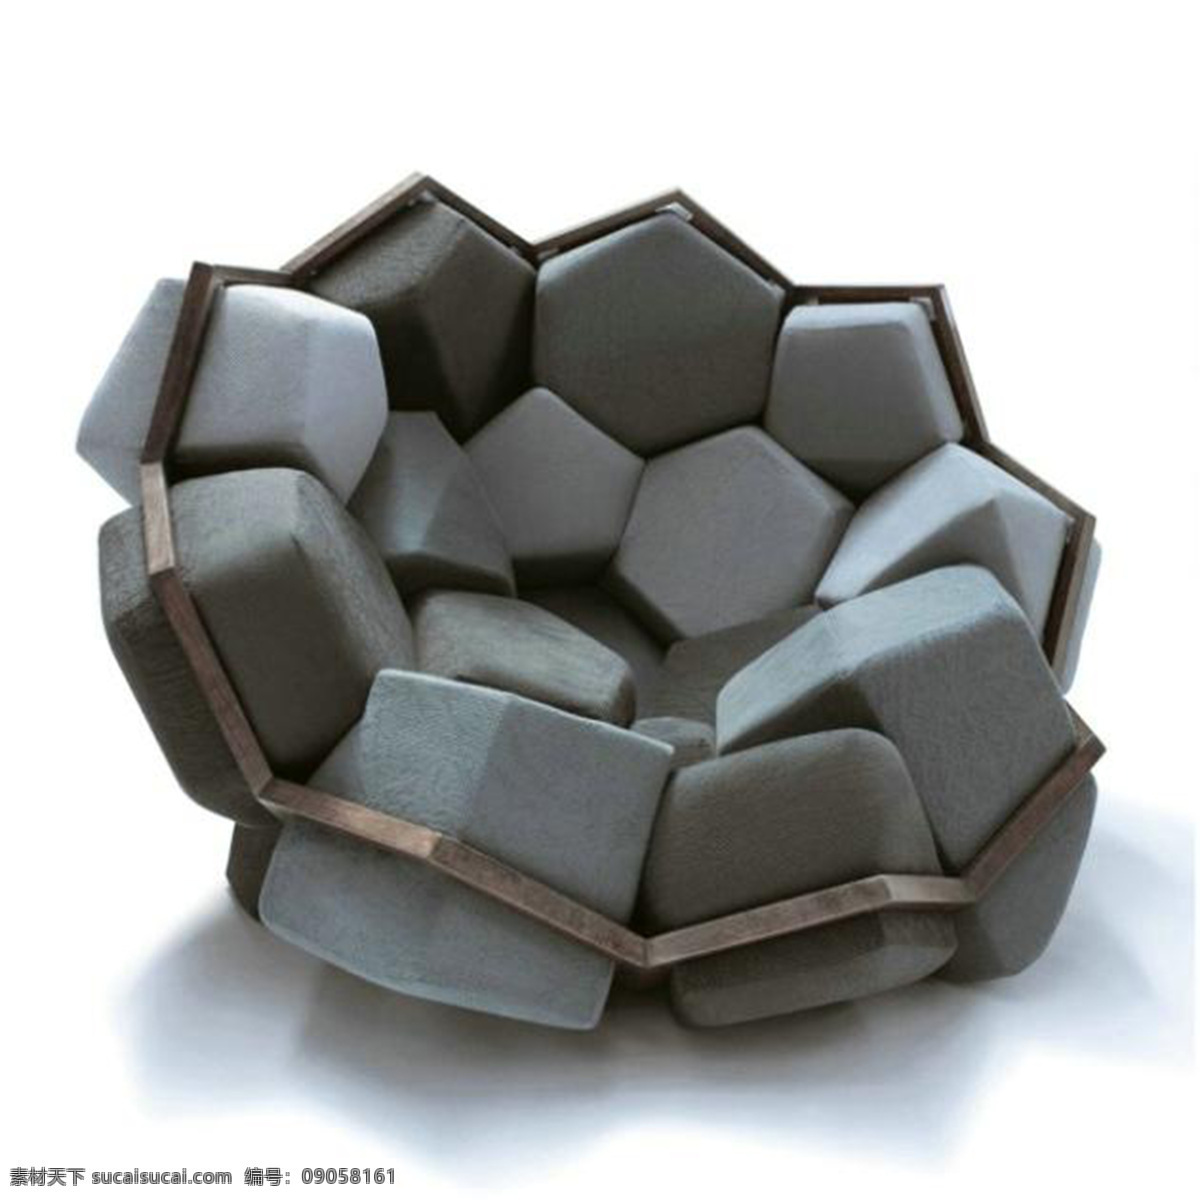 米兰 几何 风 扶手椅 产品设计 创意 工业设计 家居 简约 沙发 生活 椅子